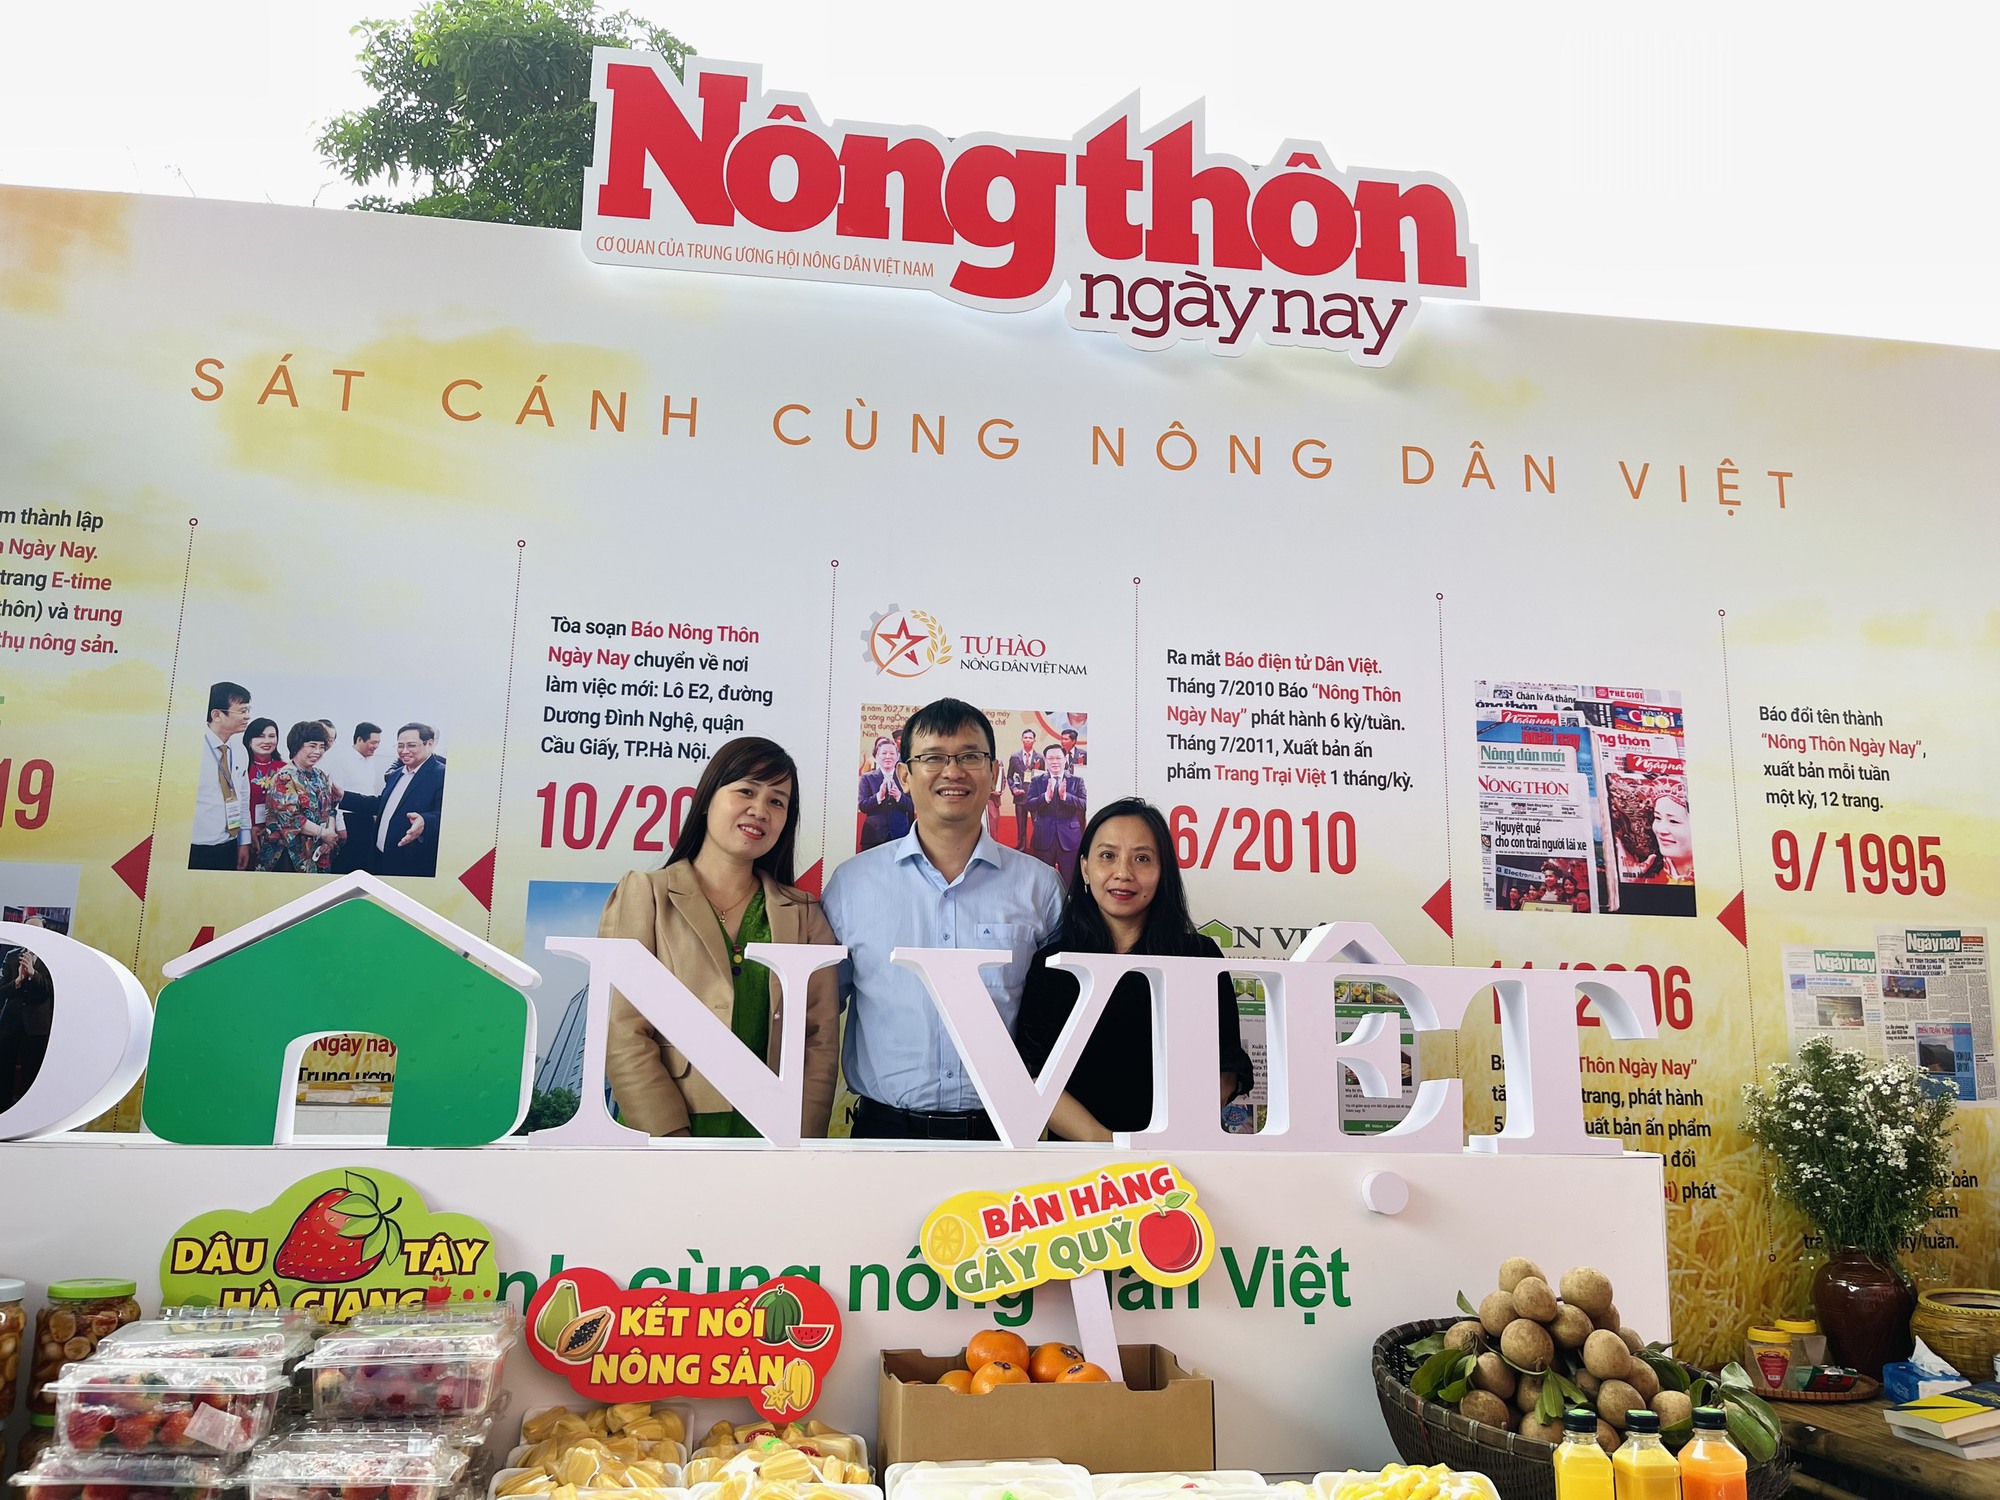 Nhộn nhịp chương trình kết nối nông sản và gây quỹ từ thiện của Báo NTNN/Điện tử Dân Việt tại Hội Báo toàn quốc - Ảnh 1.